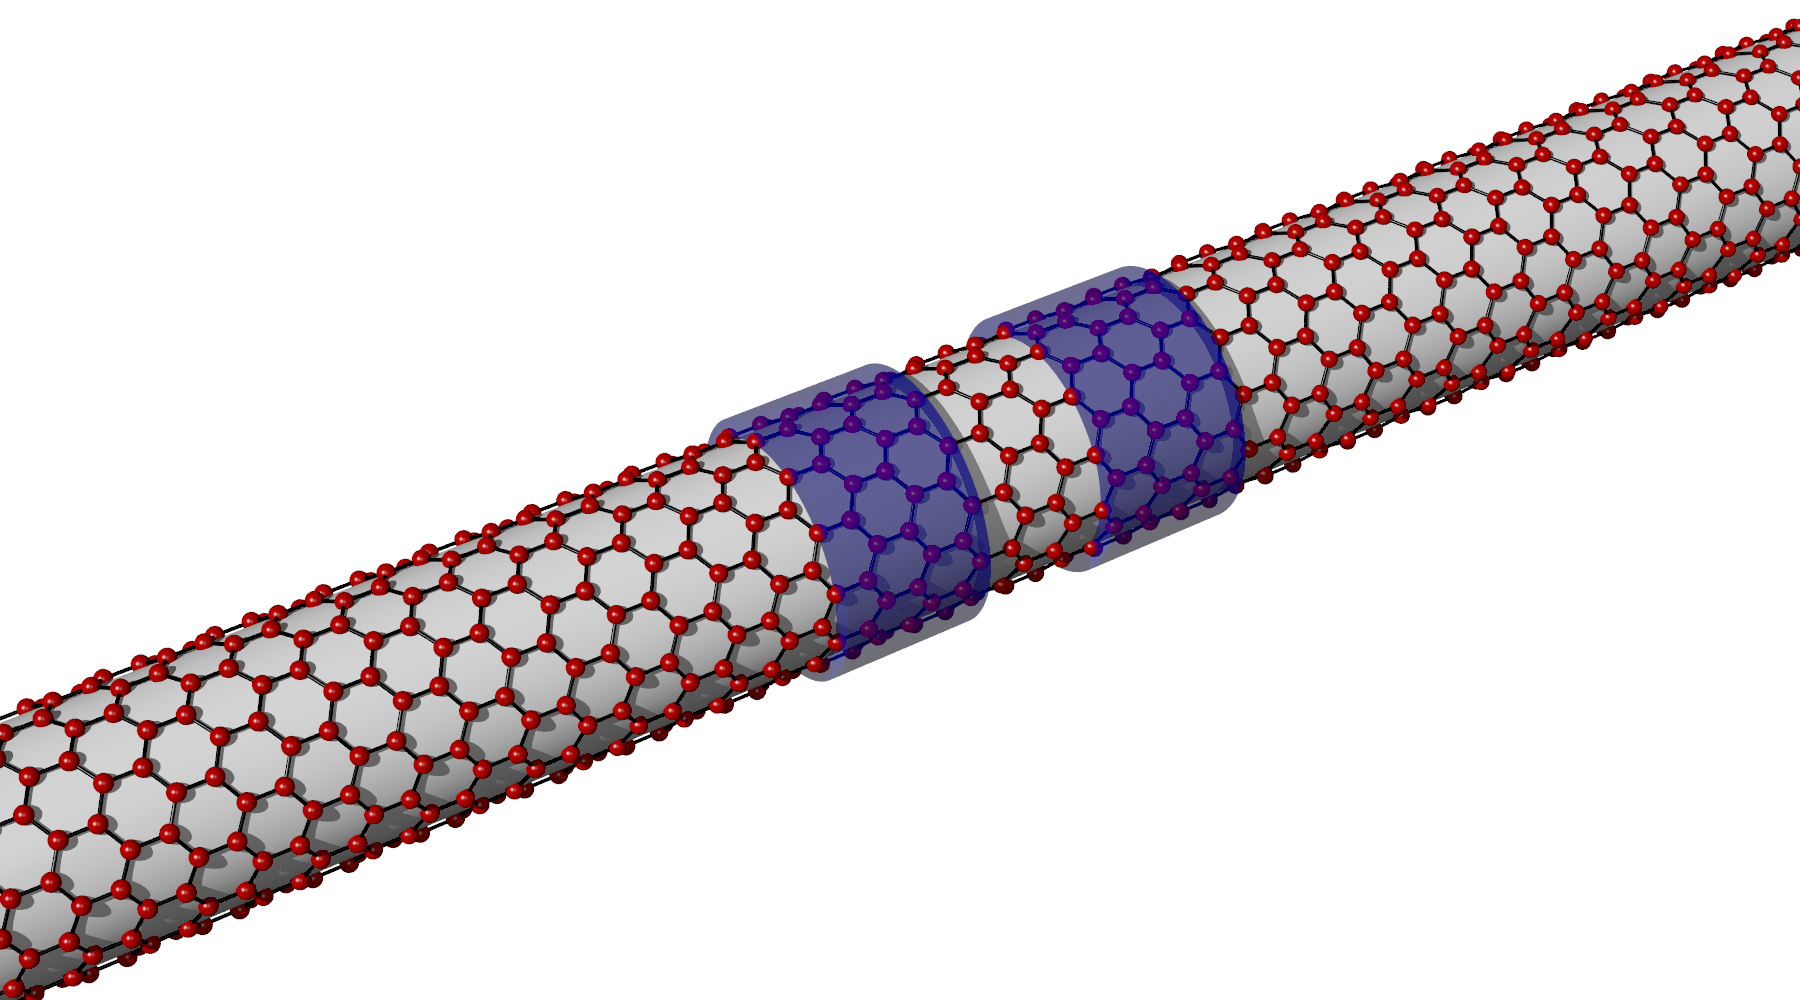 Carbon nanotube quantum dots